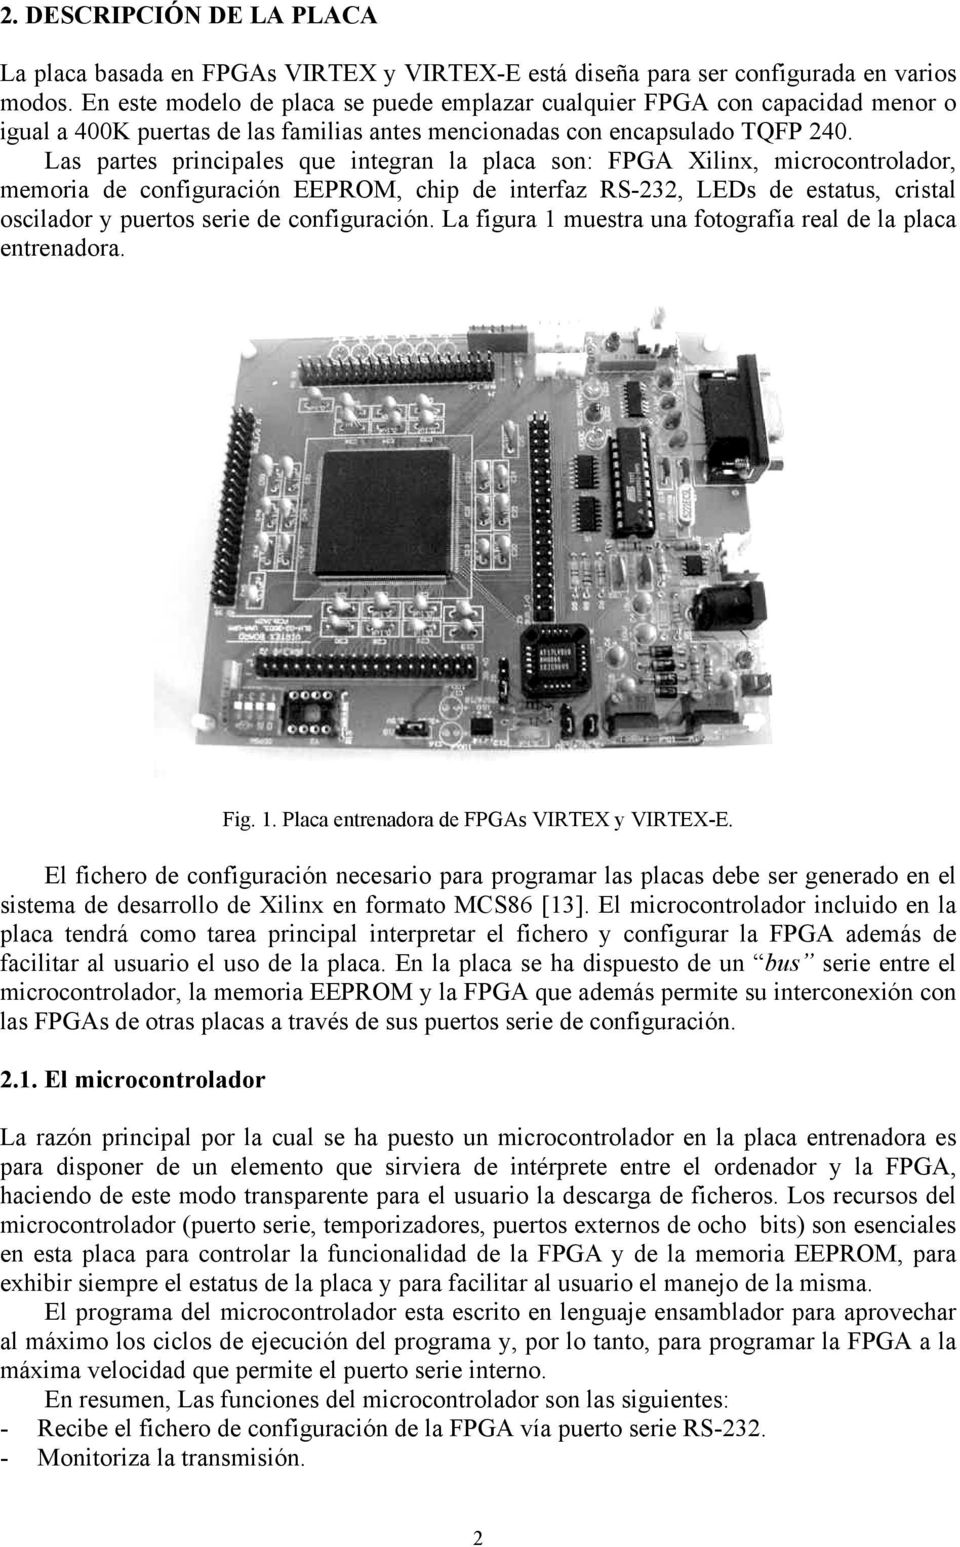 Las partes principales que integran la placa son: FPGA Xilinx, microcontrolador, memoria de configuración EEPROM, chip de interfaz RS-232, LEDs de estatus, cristal oscilador y puertos serie de